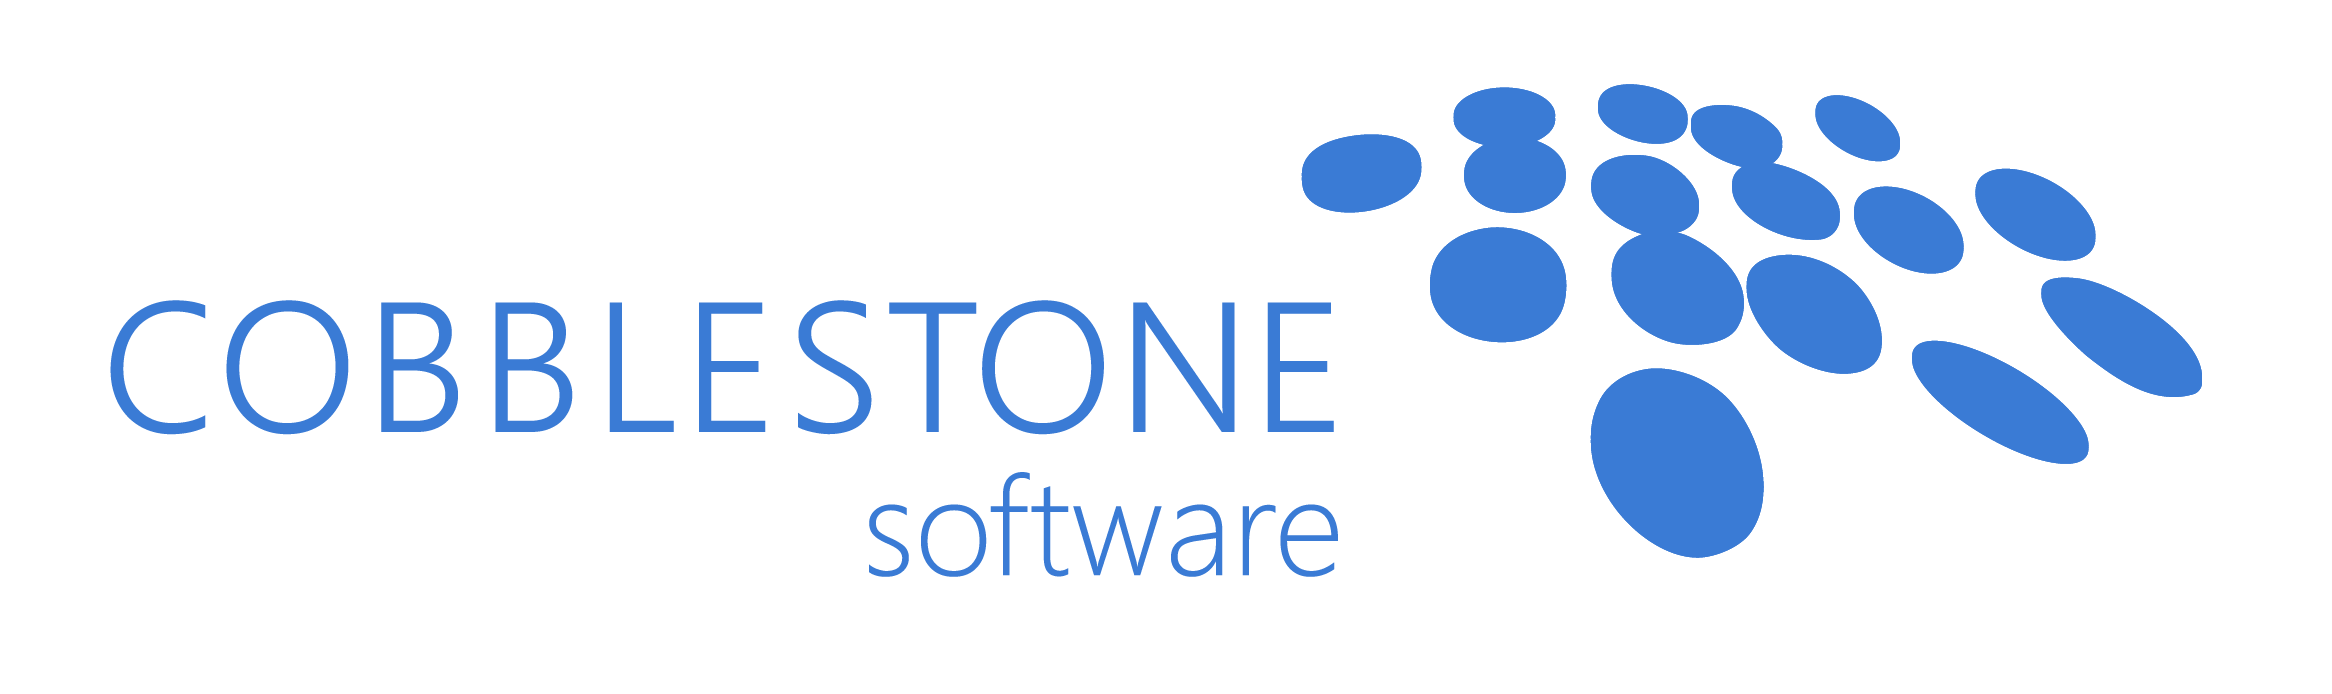 CobbleStone Logo